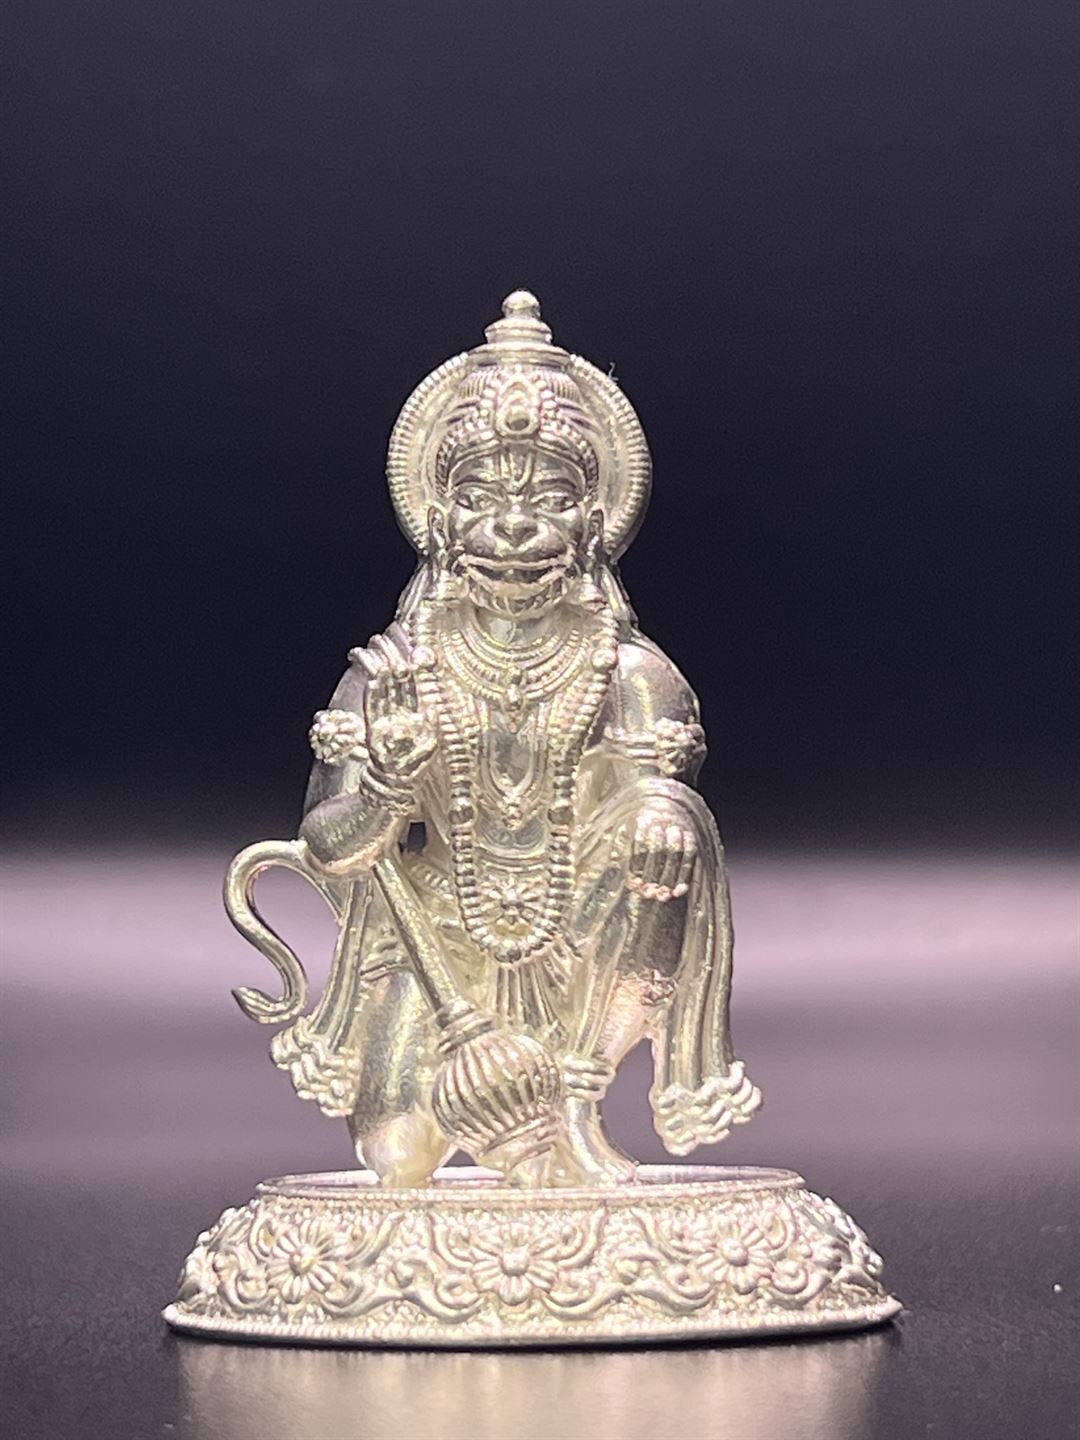 Om Pooja Shop Hanuman Ring in Pure Silver|Amazon.com